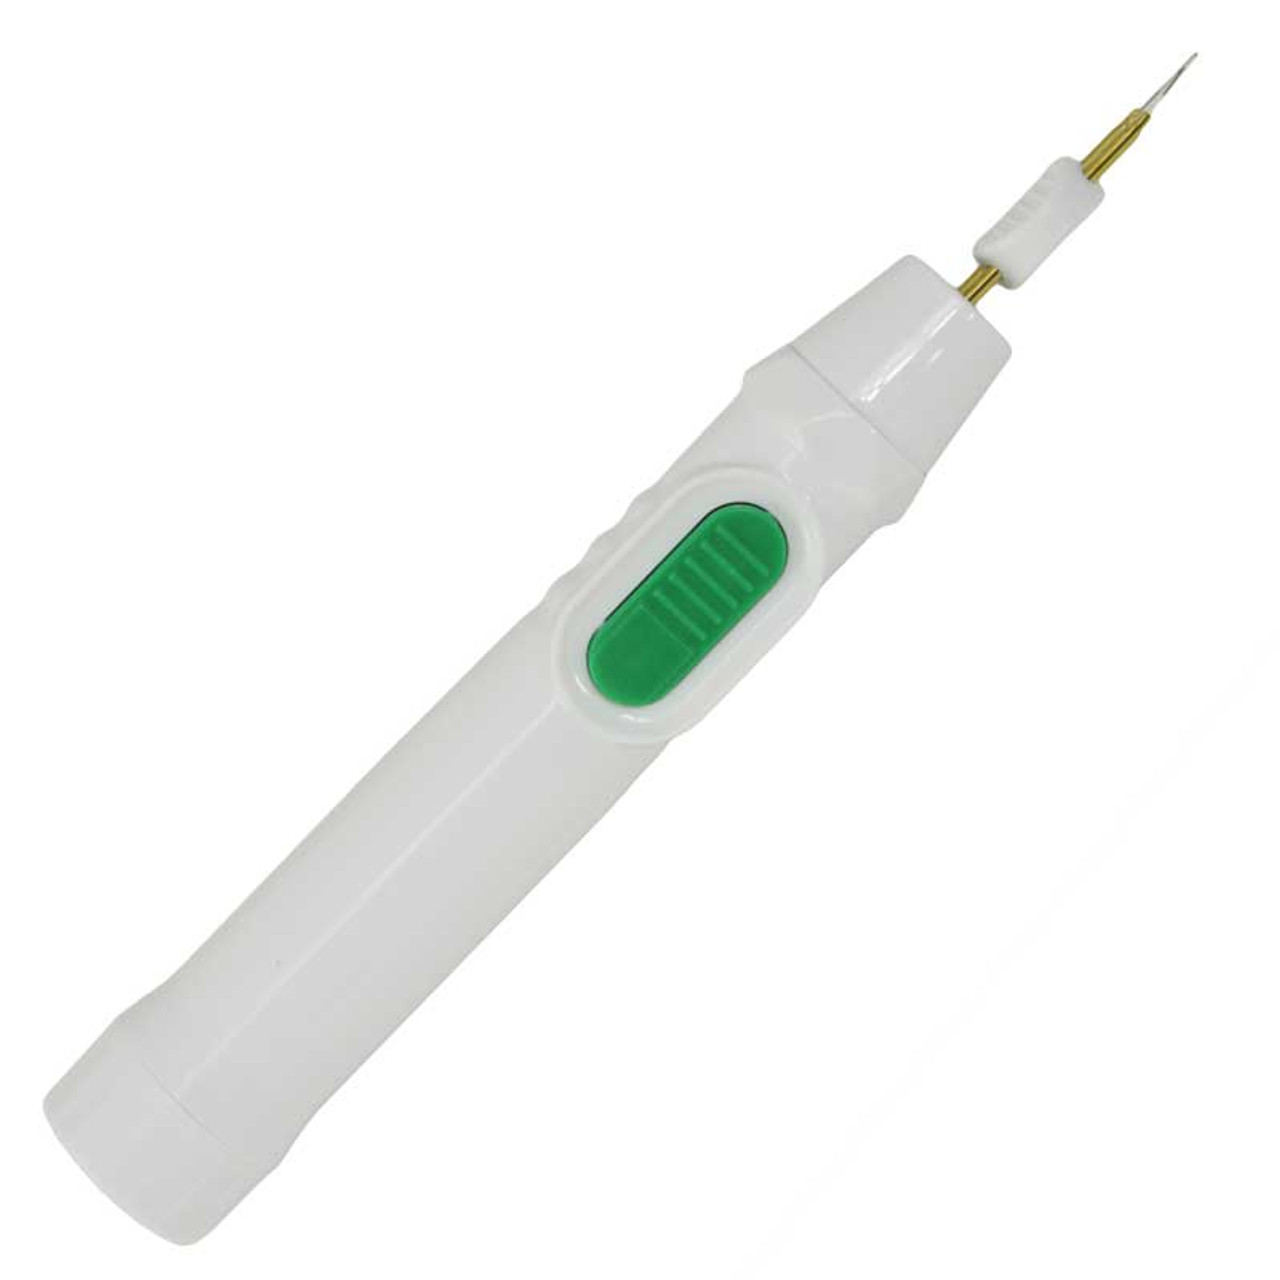 Portable Speedy Max Wax Pen